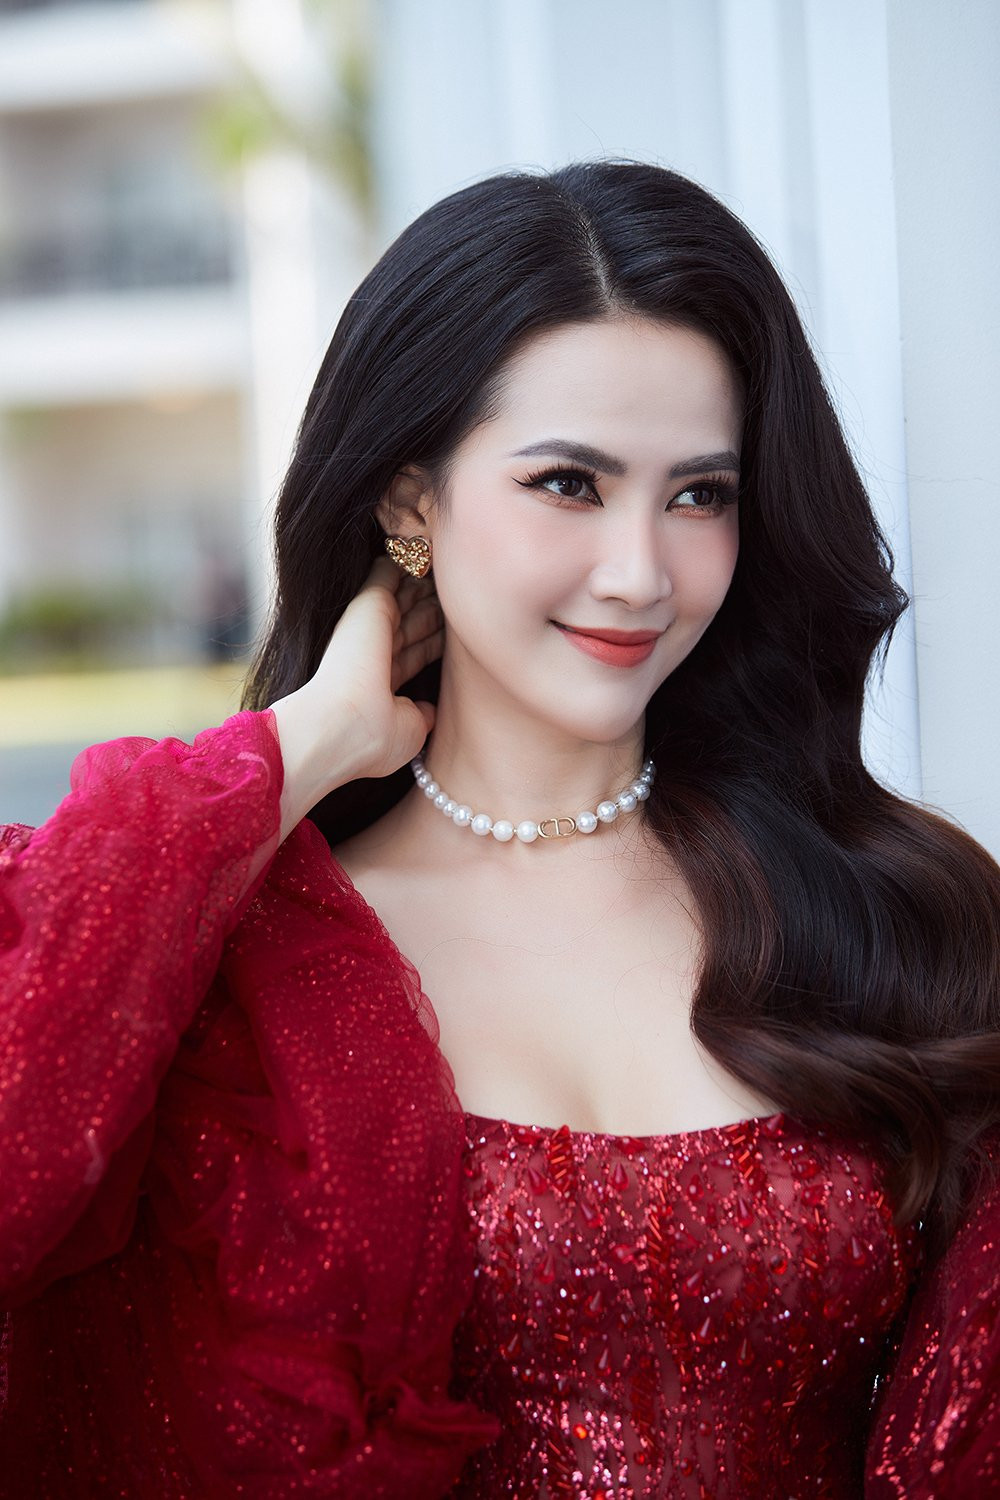 Hoa hậu Phan Thị Mơ vật vã với bệnh đau dạ dày  - 1